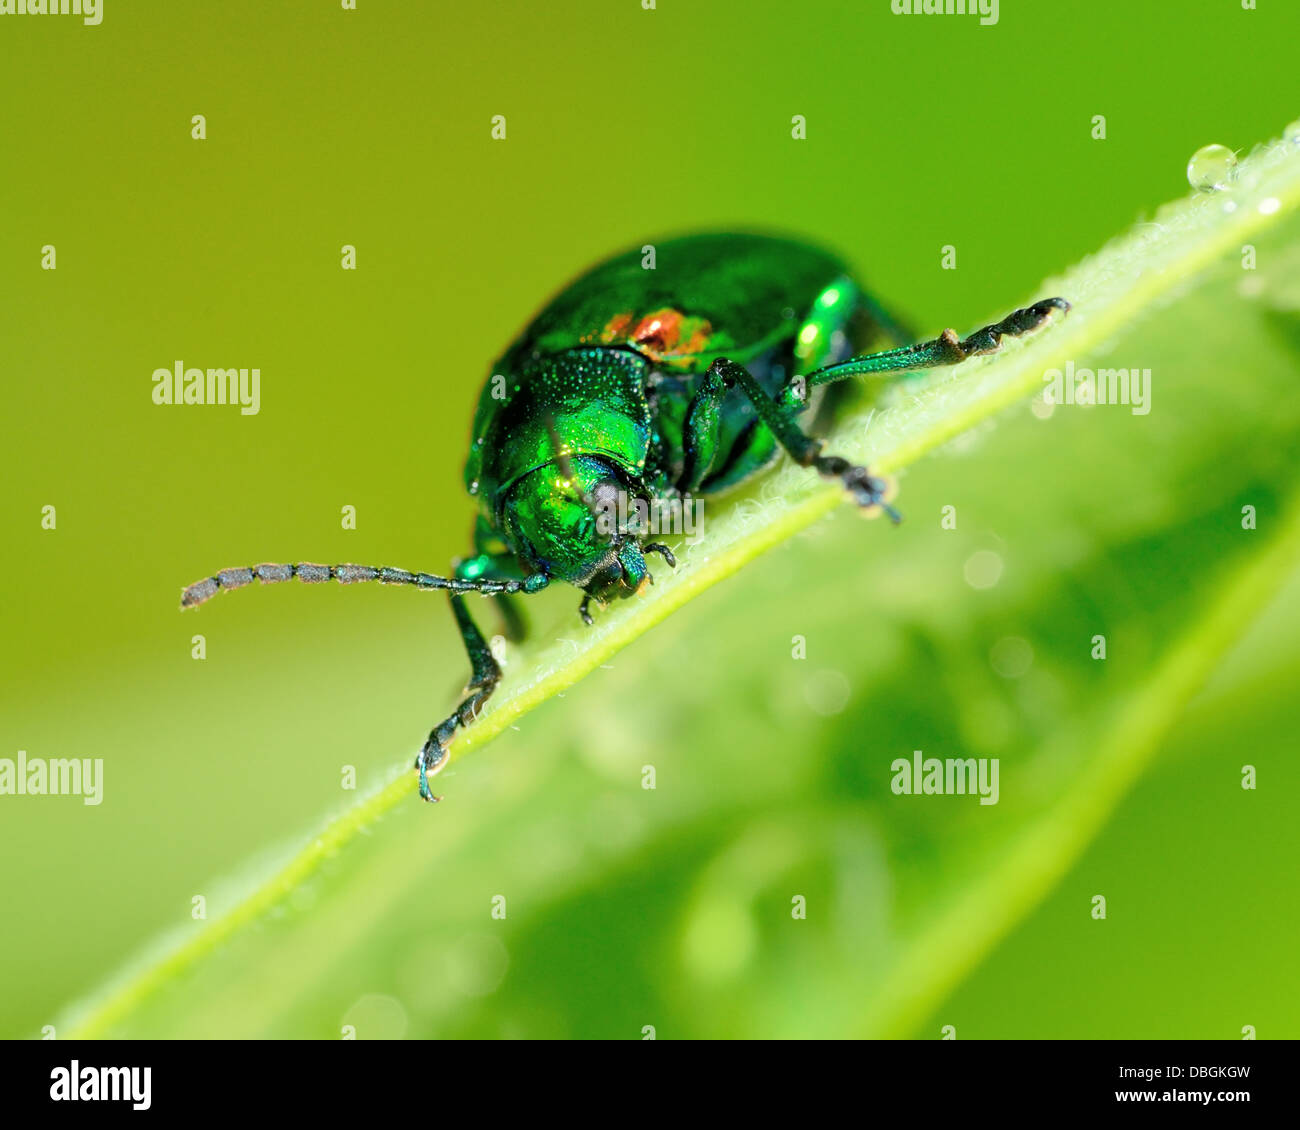 L'apocyn Beetle perché sur une plante verte feuille. Banque D'Images